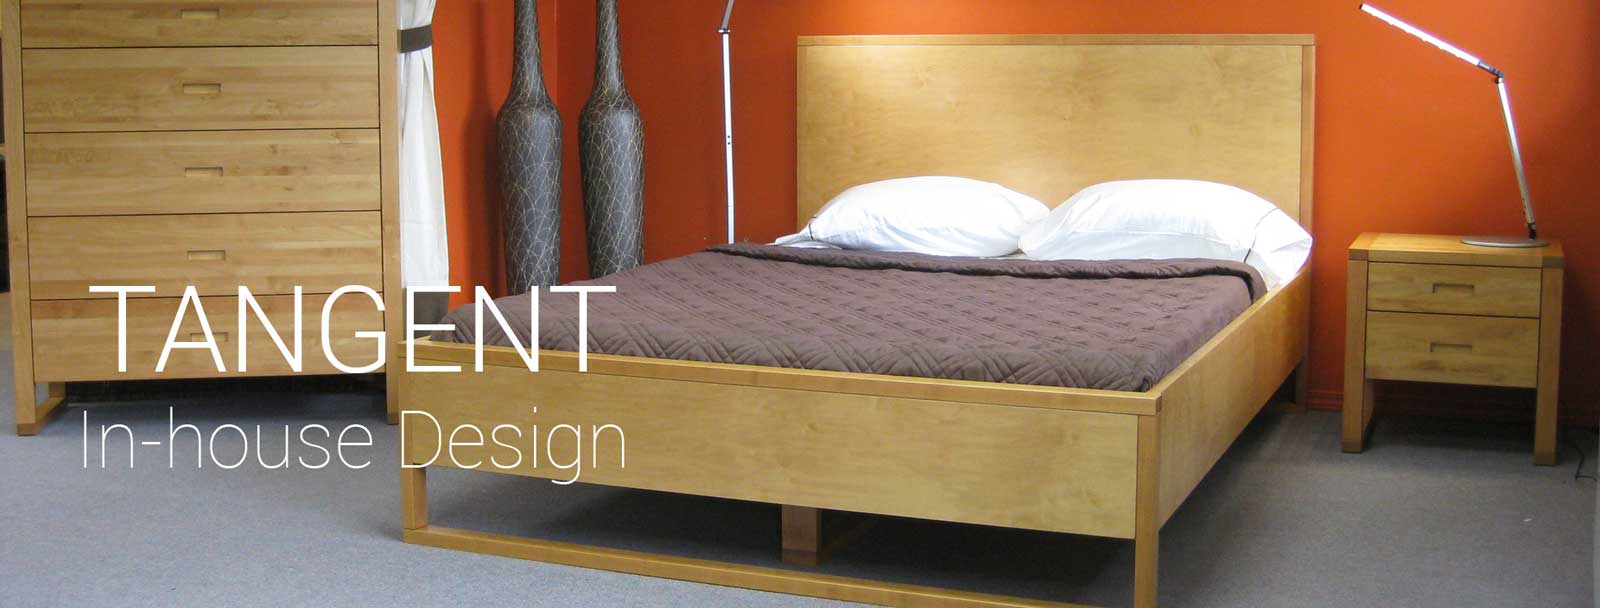 Tangent condo furniture design line